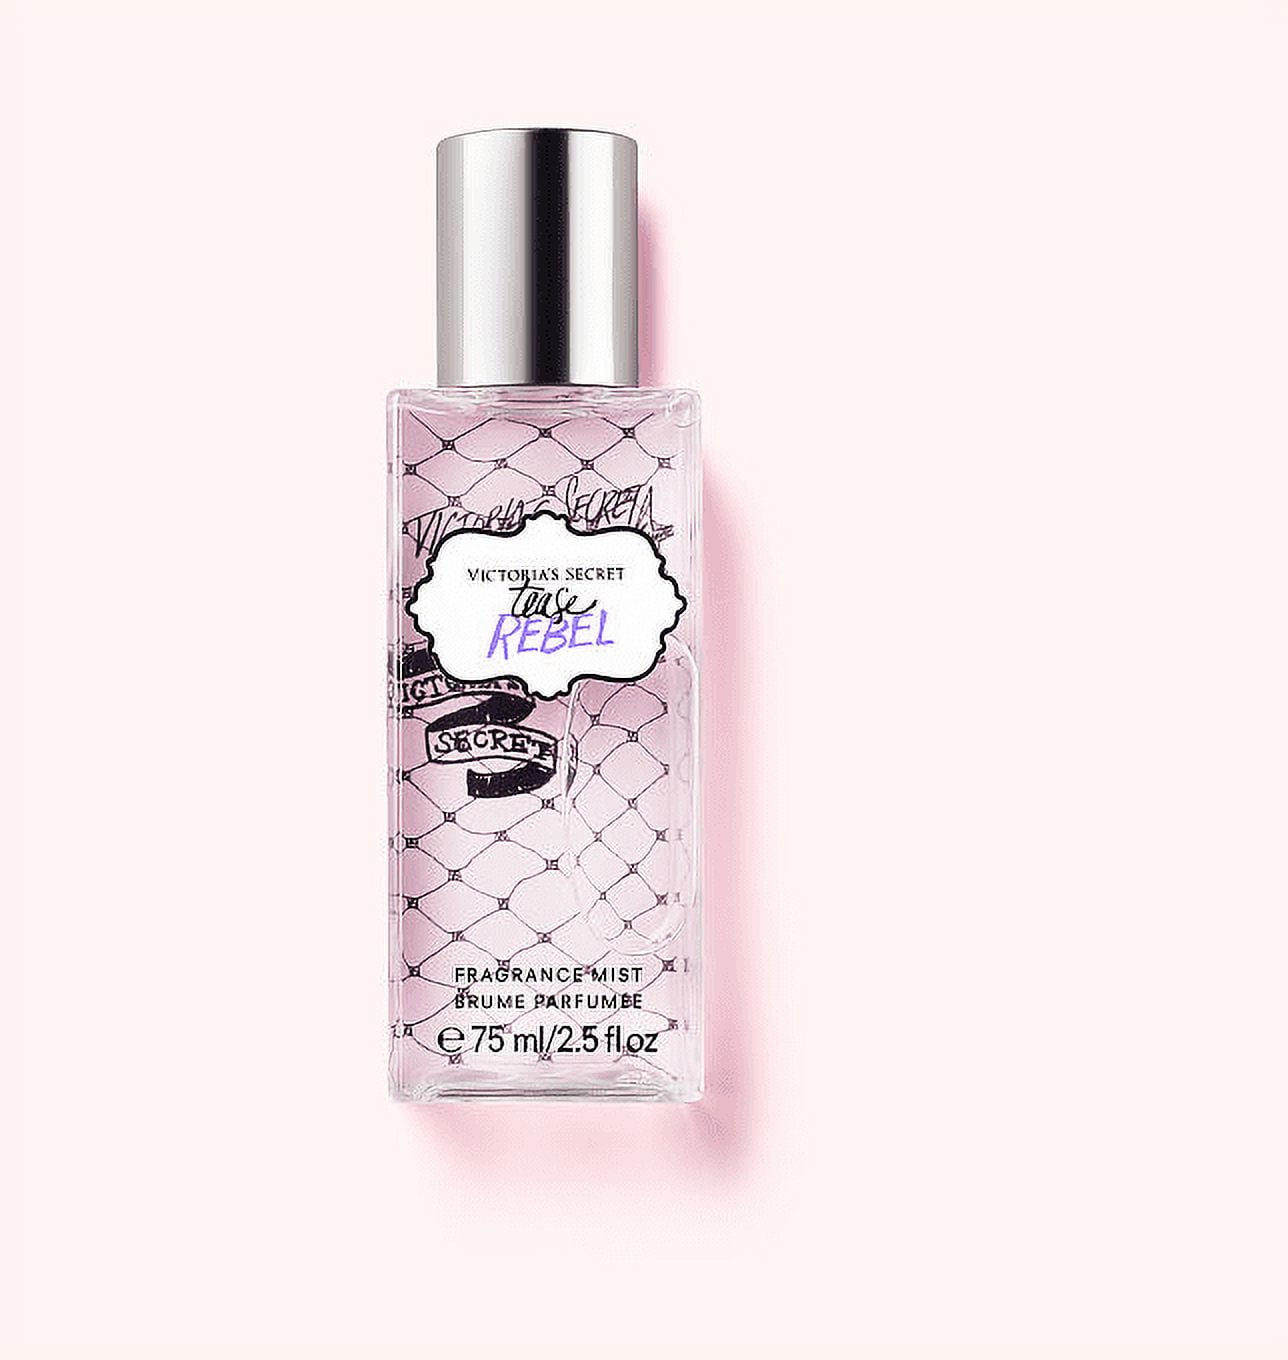 Victoria's Secret Tease Rebel Fragrance Mist Travel Size 